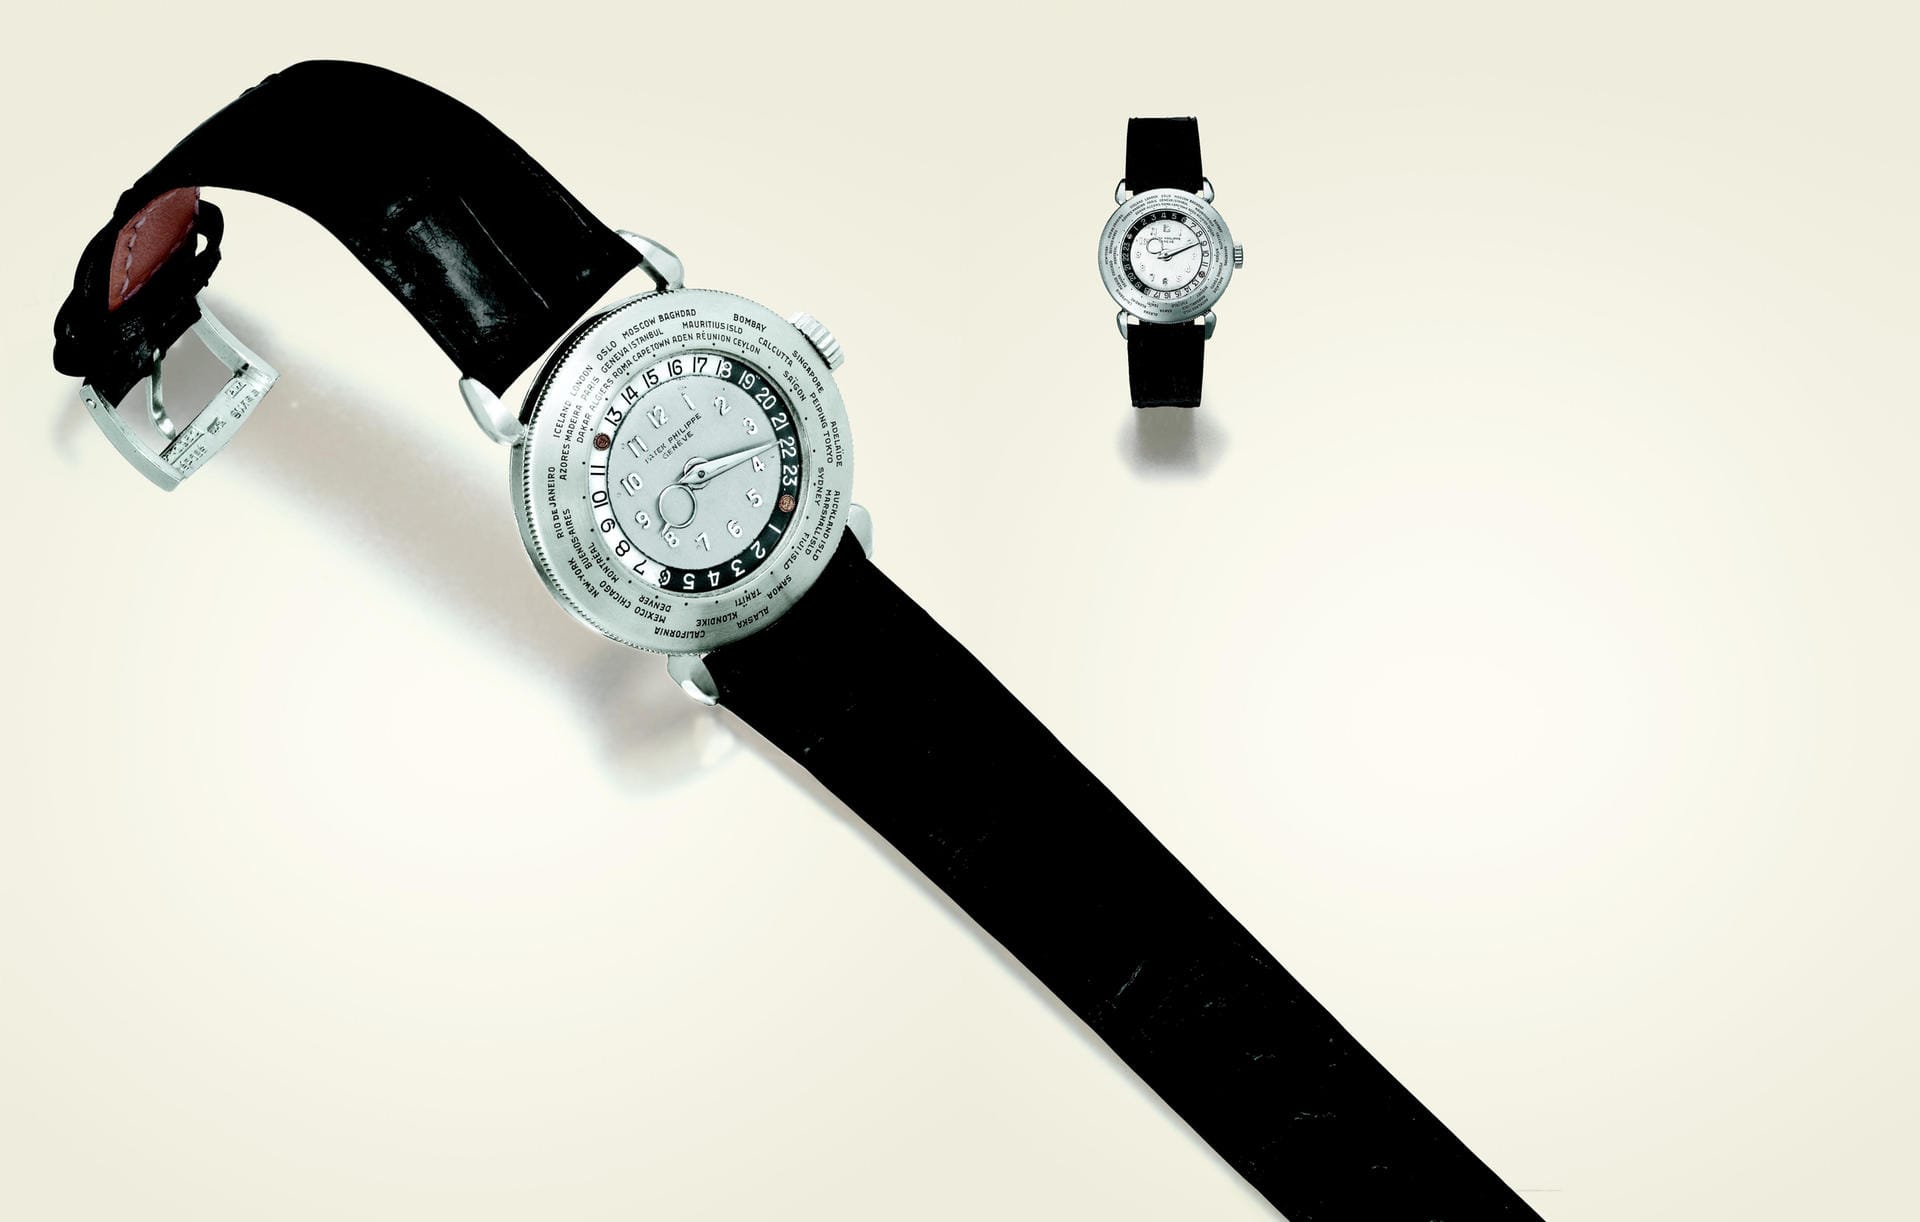 Geht es um die teuersten Uhren der Welt führt kein Weg an Patek Philippe vorbei. Vor allem auch für die Klassiker des traditionsreichen Herstellers werden enorme Summen gezahlt. Die Patek Philippe Platinum World Time Watch aus dem Jahr 1939 erzielte bei einer Auktion in Genf 2002 einen Preis von rund vier Millionen US-Dollar.